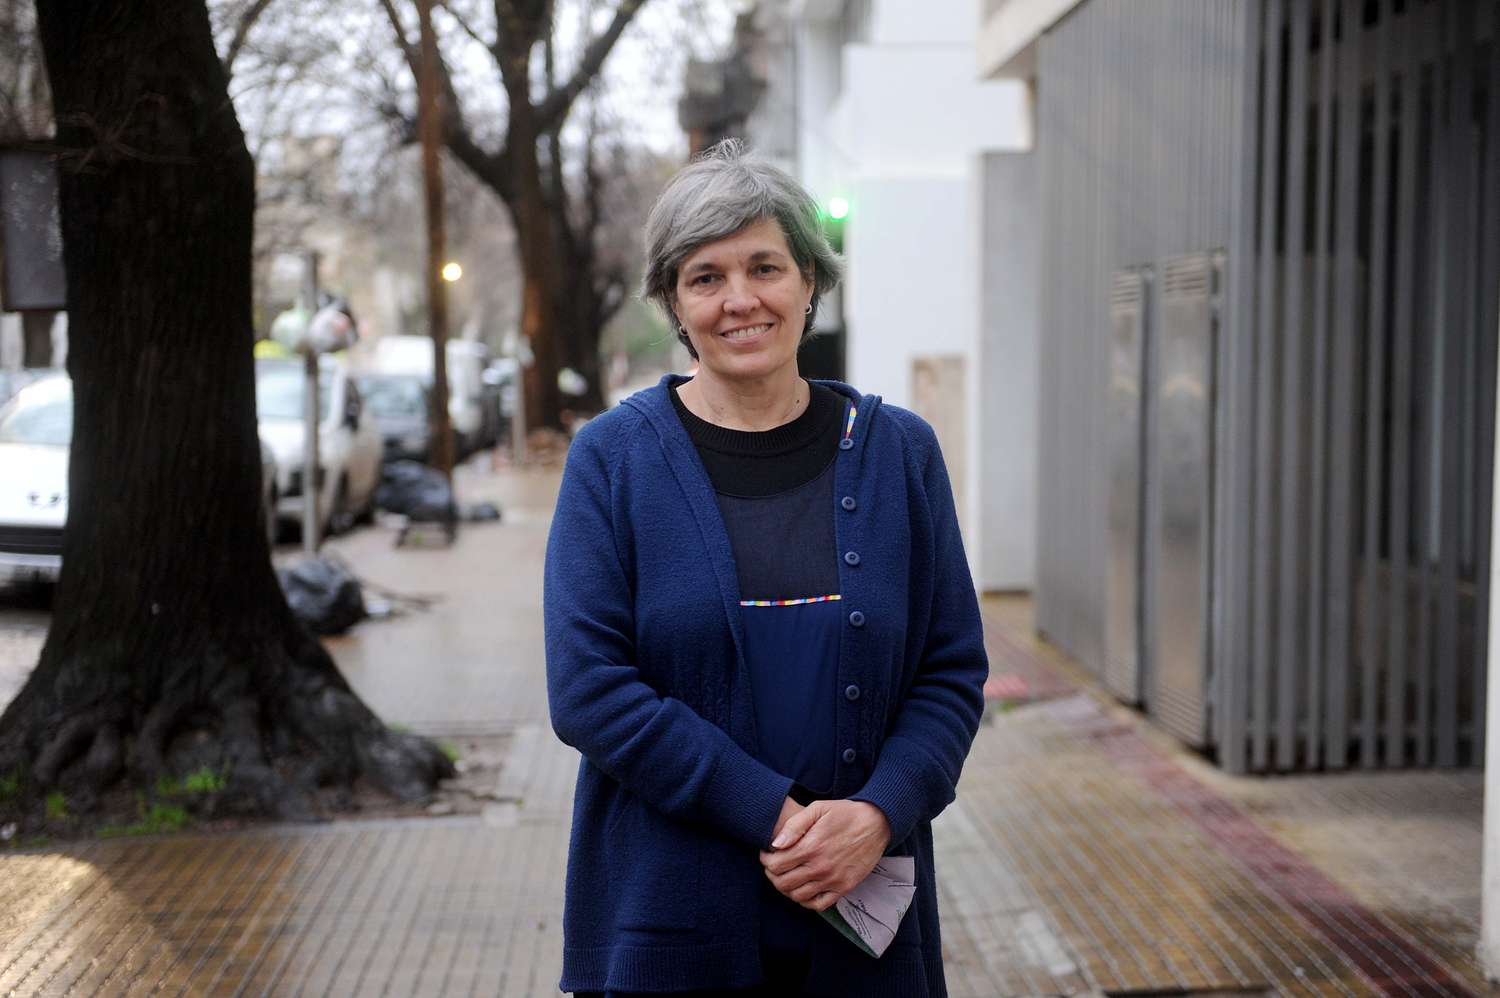 Quien es Ana María, la maestra argentina elegida entre los 10 mejores docentes del mundo